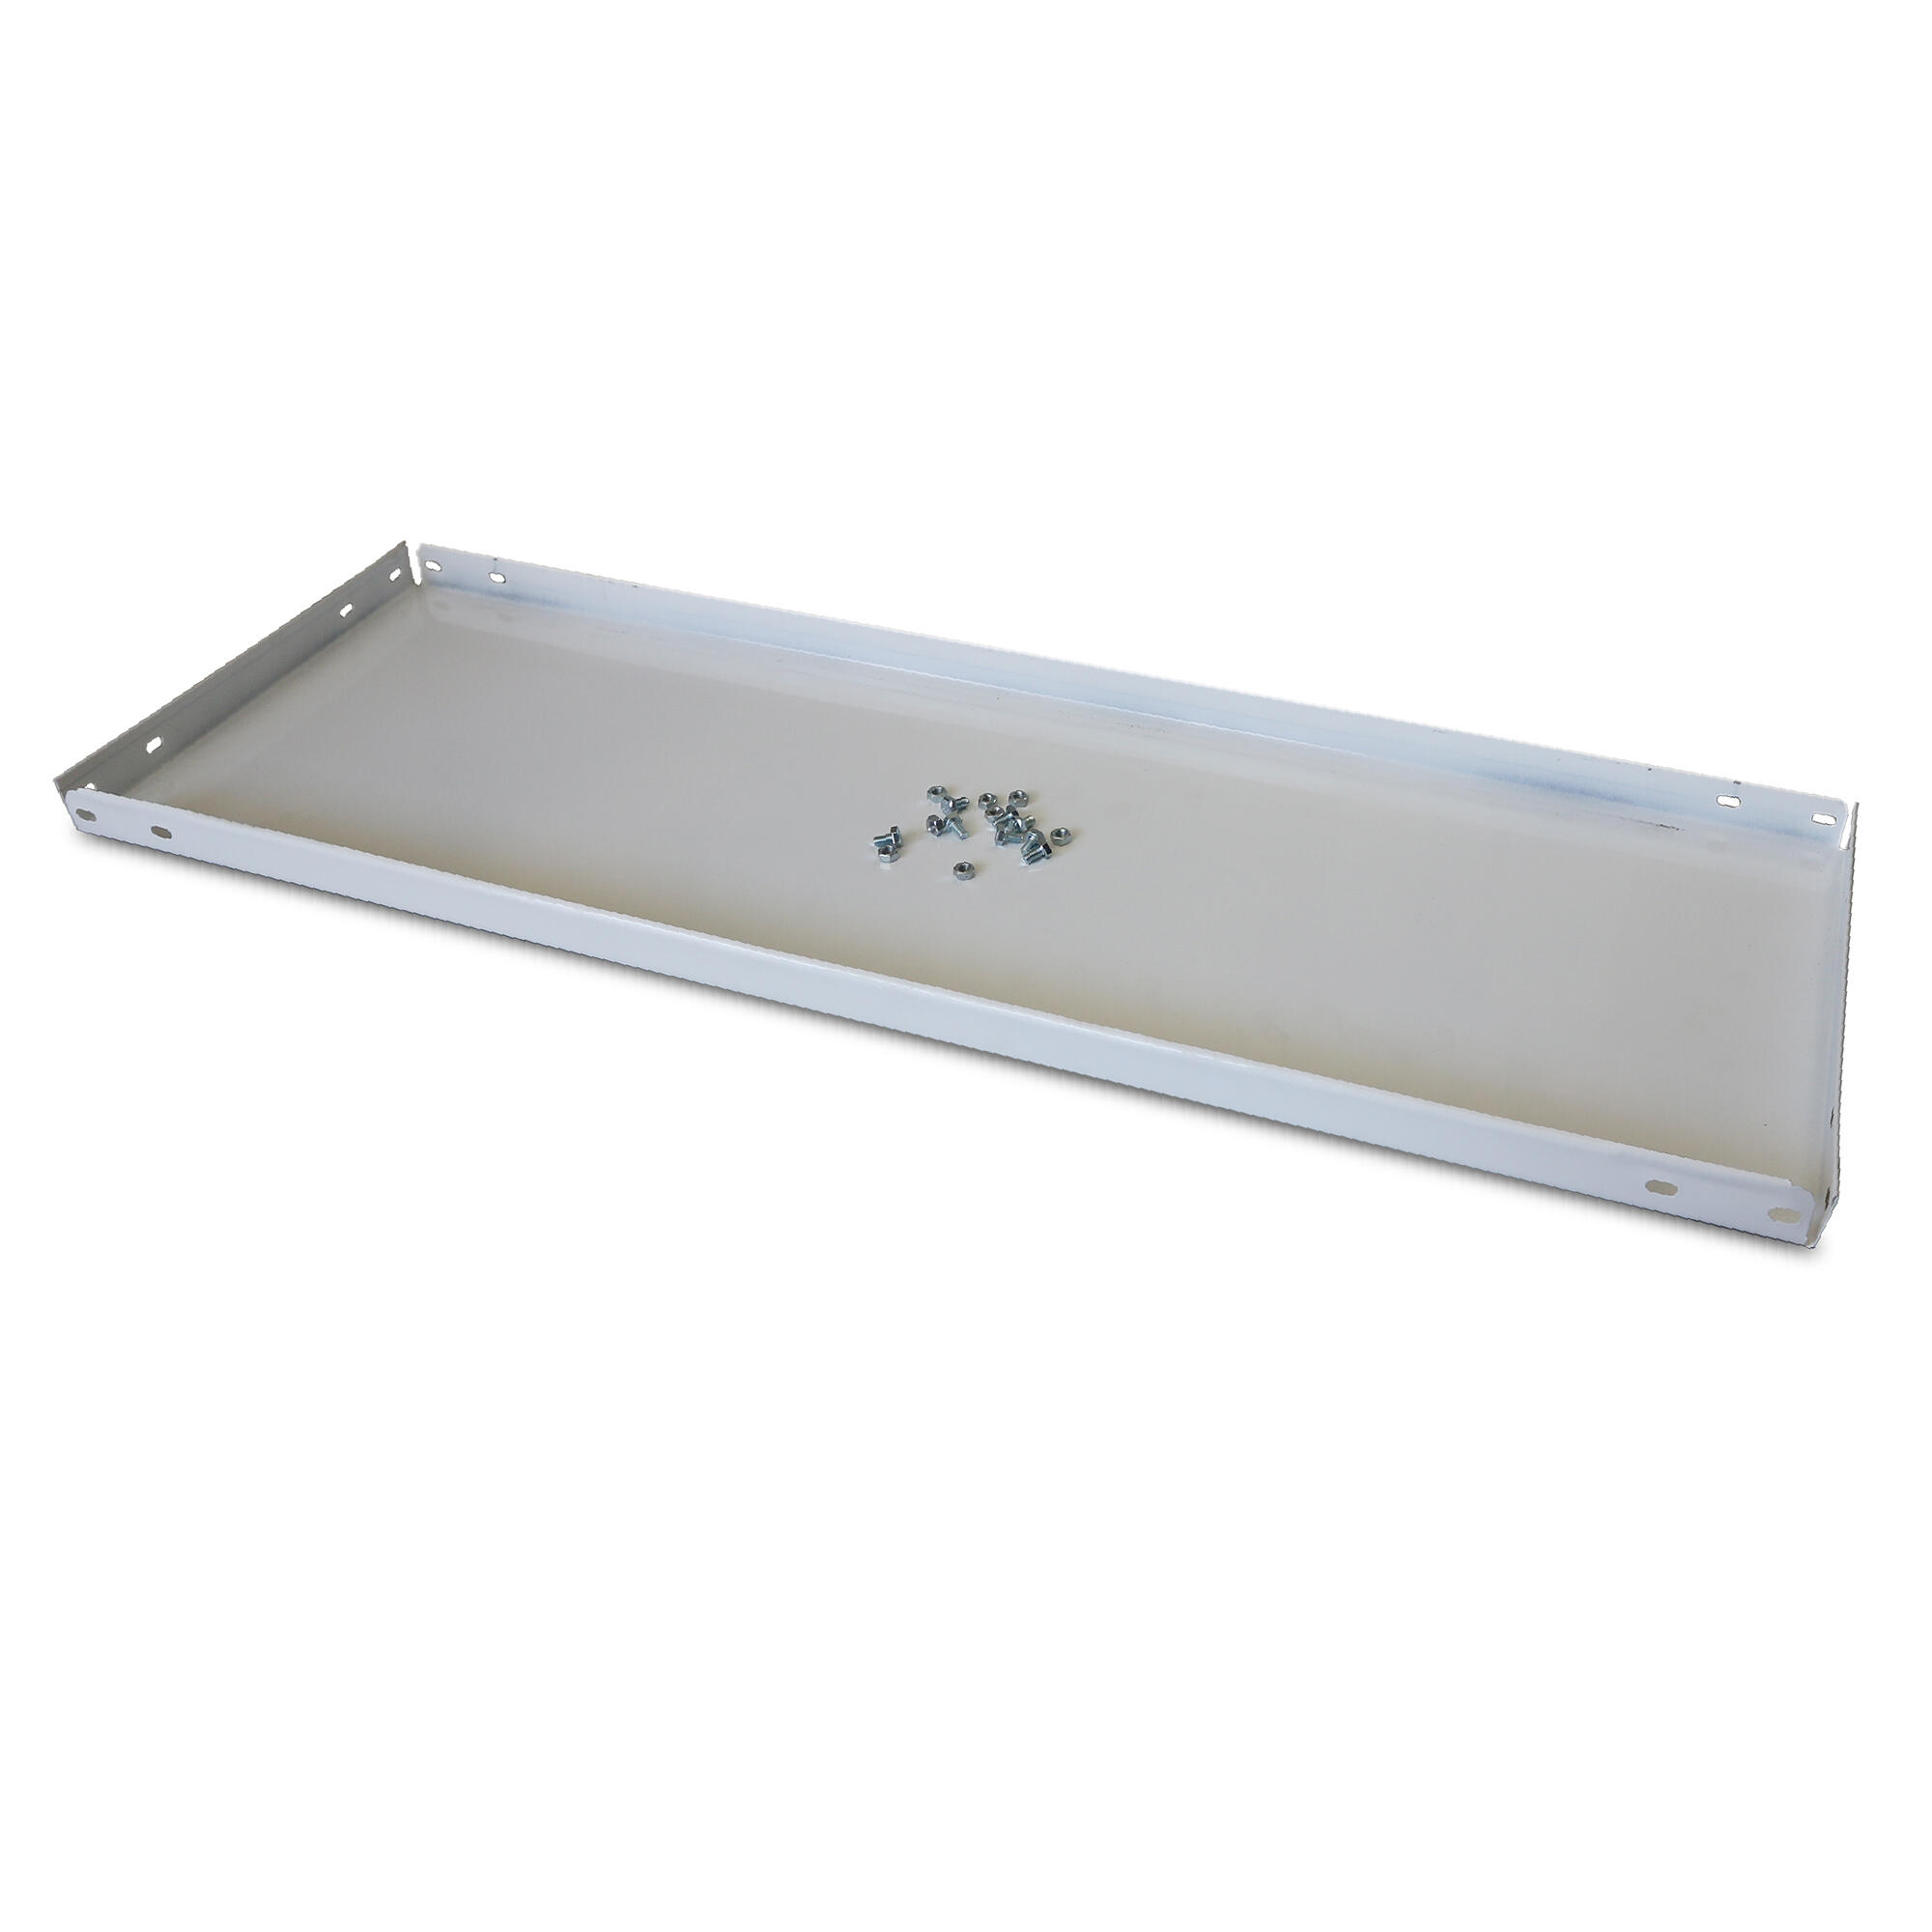 Balda recta para sistema de estantes de acero blanco de 60x40cm